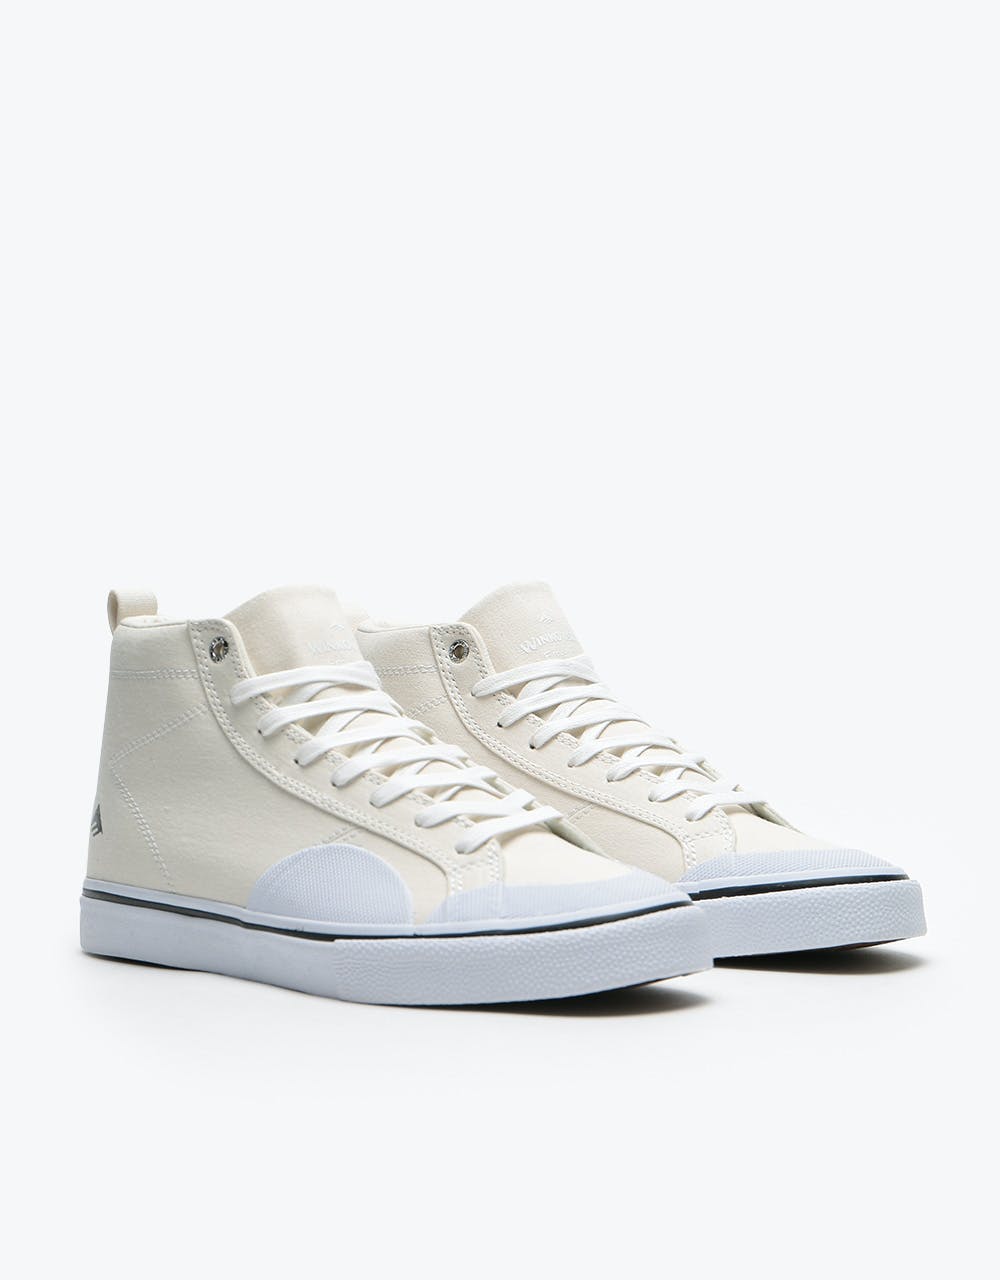 Emerica Omen High Skate Shoes - White